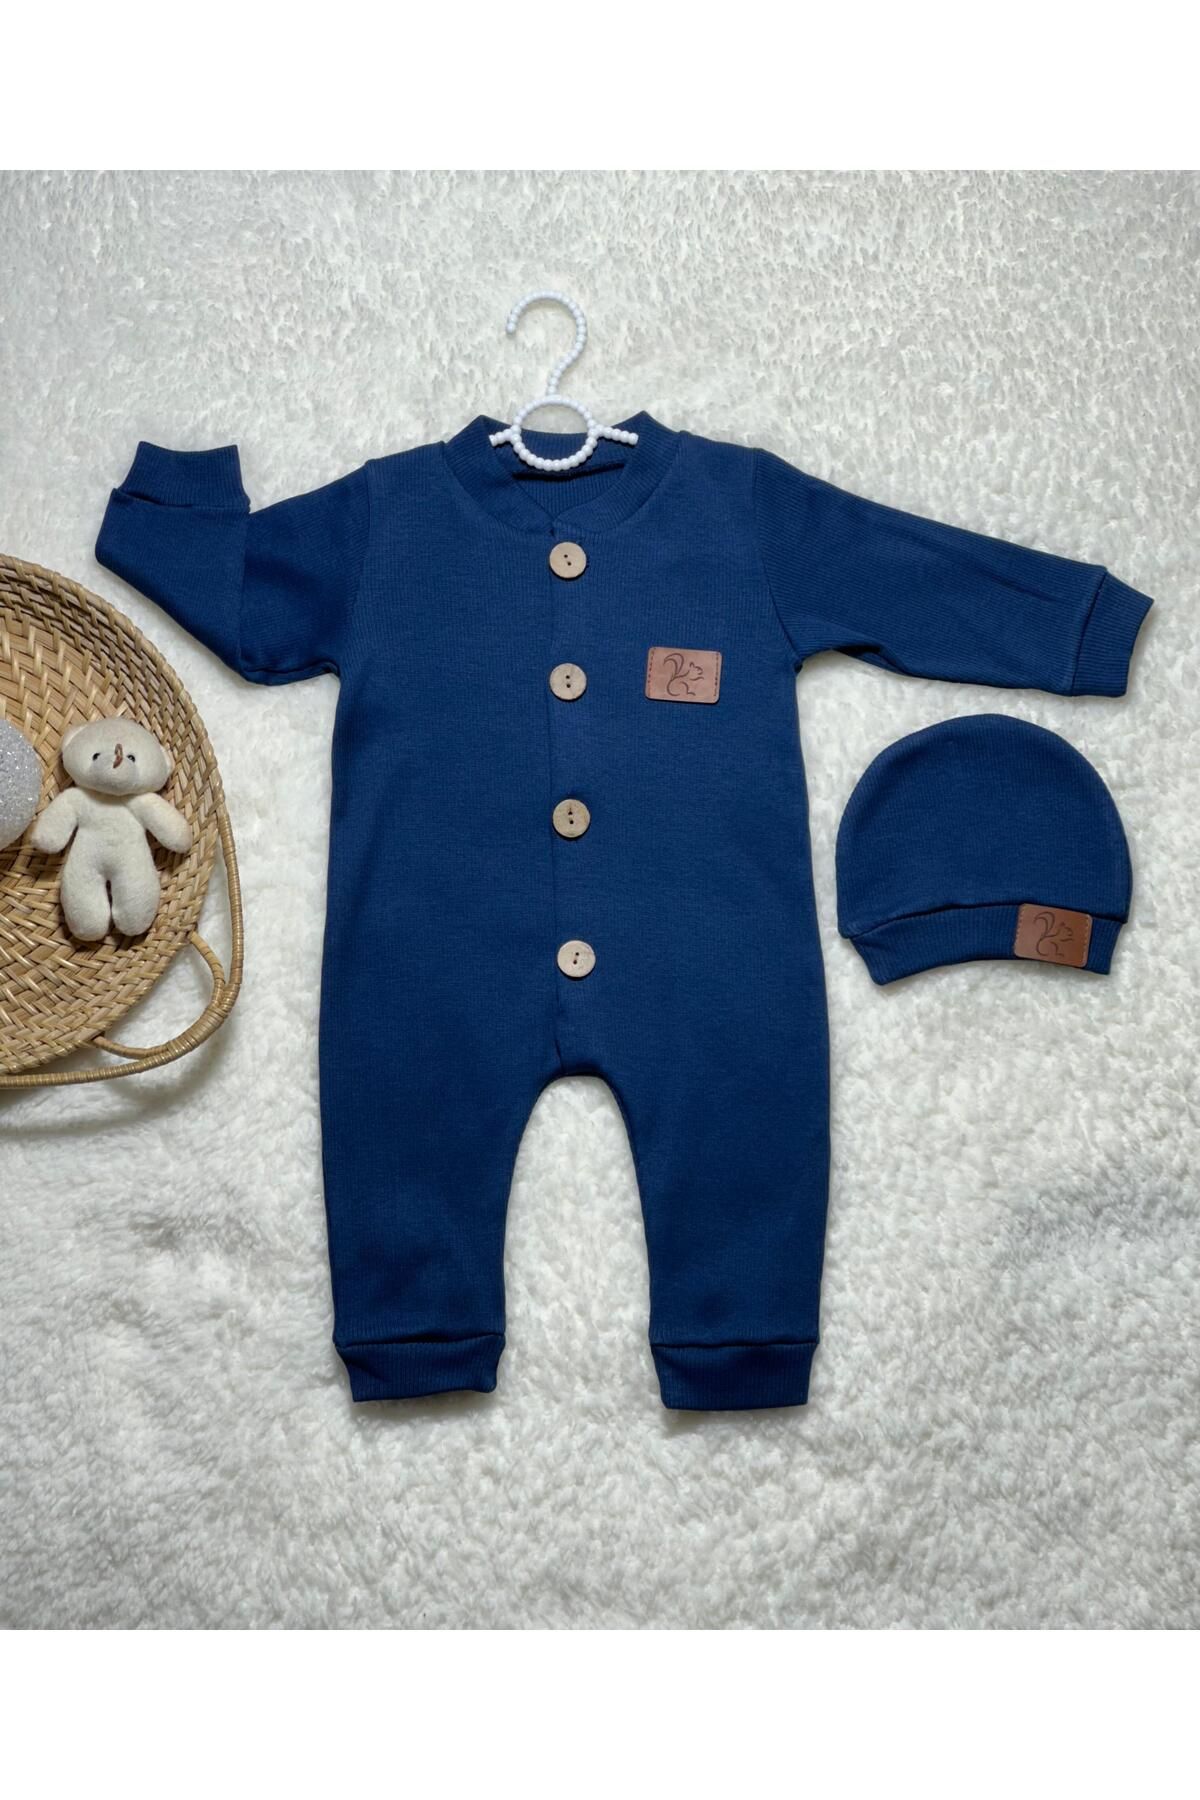 SuAy Baby Kaşkorse Kumaş Düğmeli Şapkalı Şık Kız-erkek Bebek Tulum